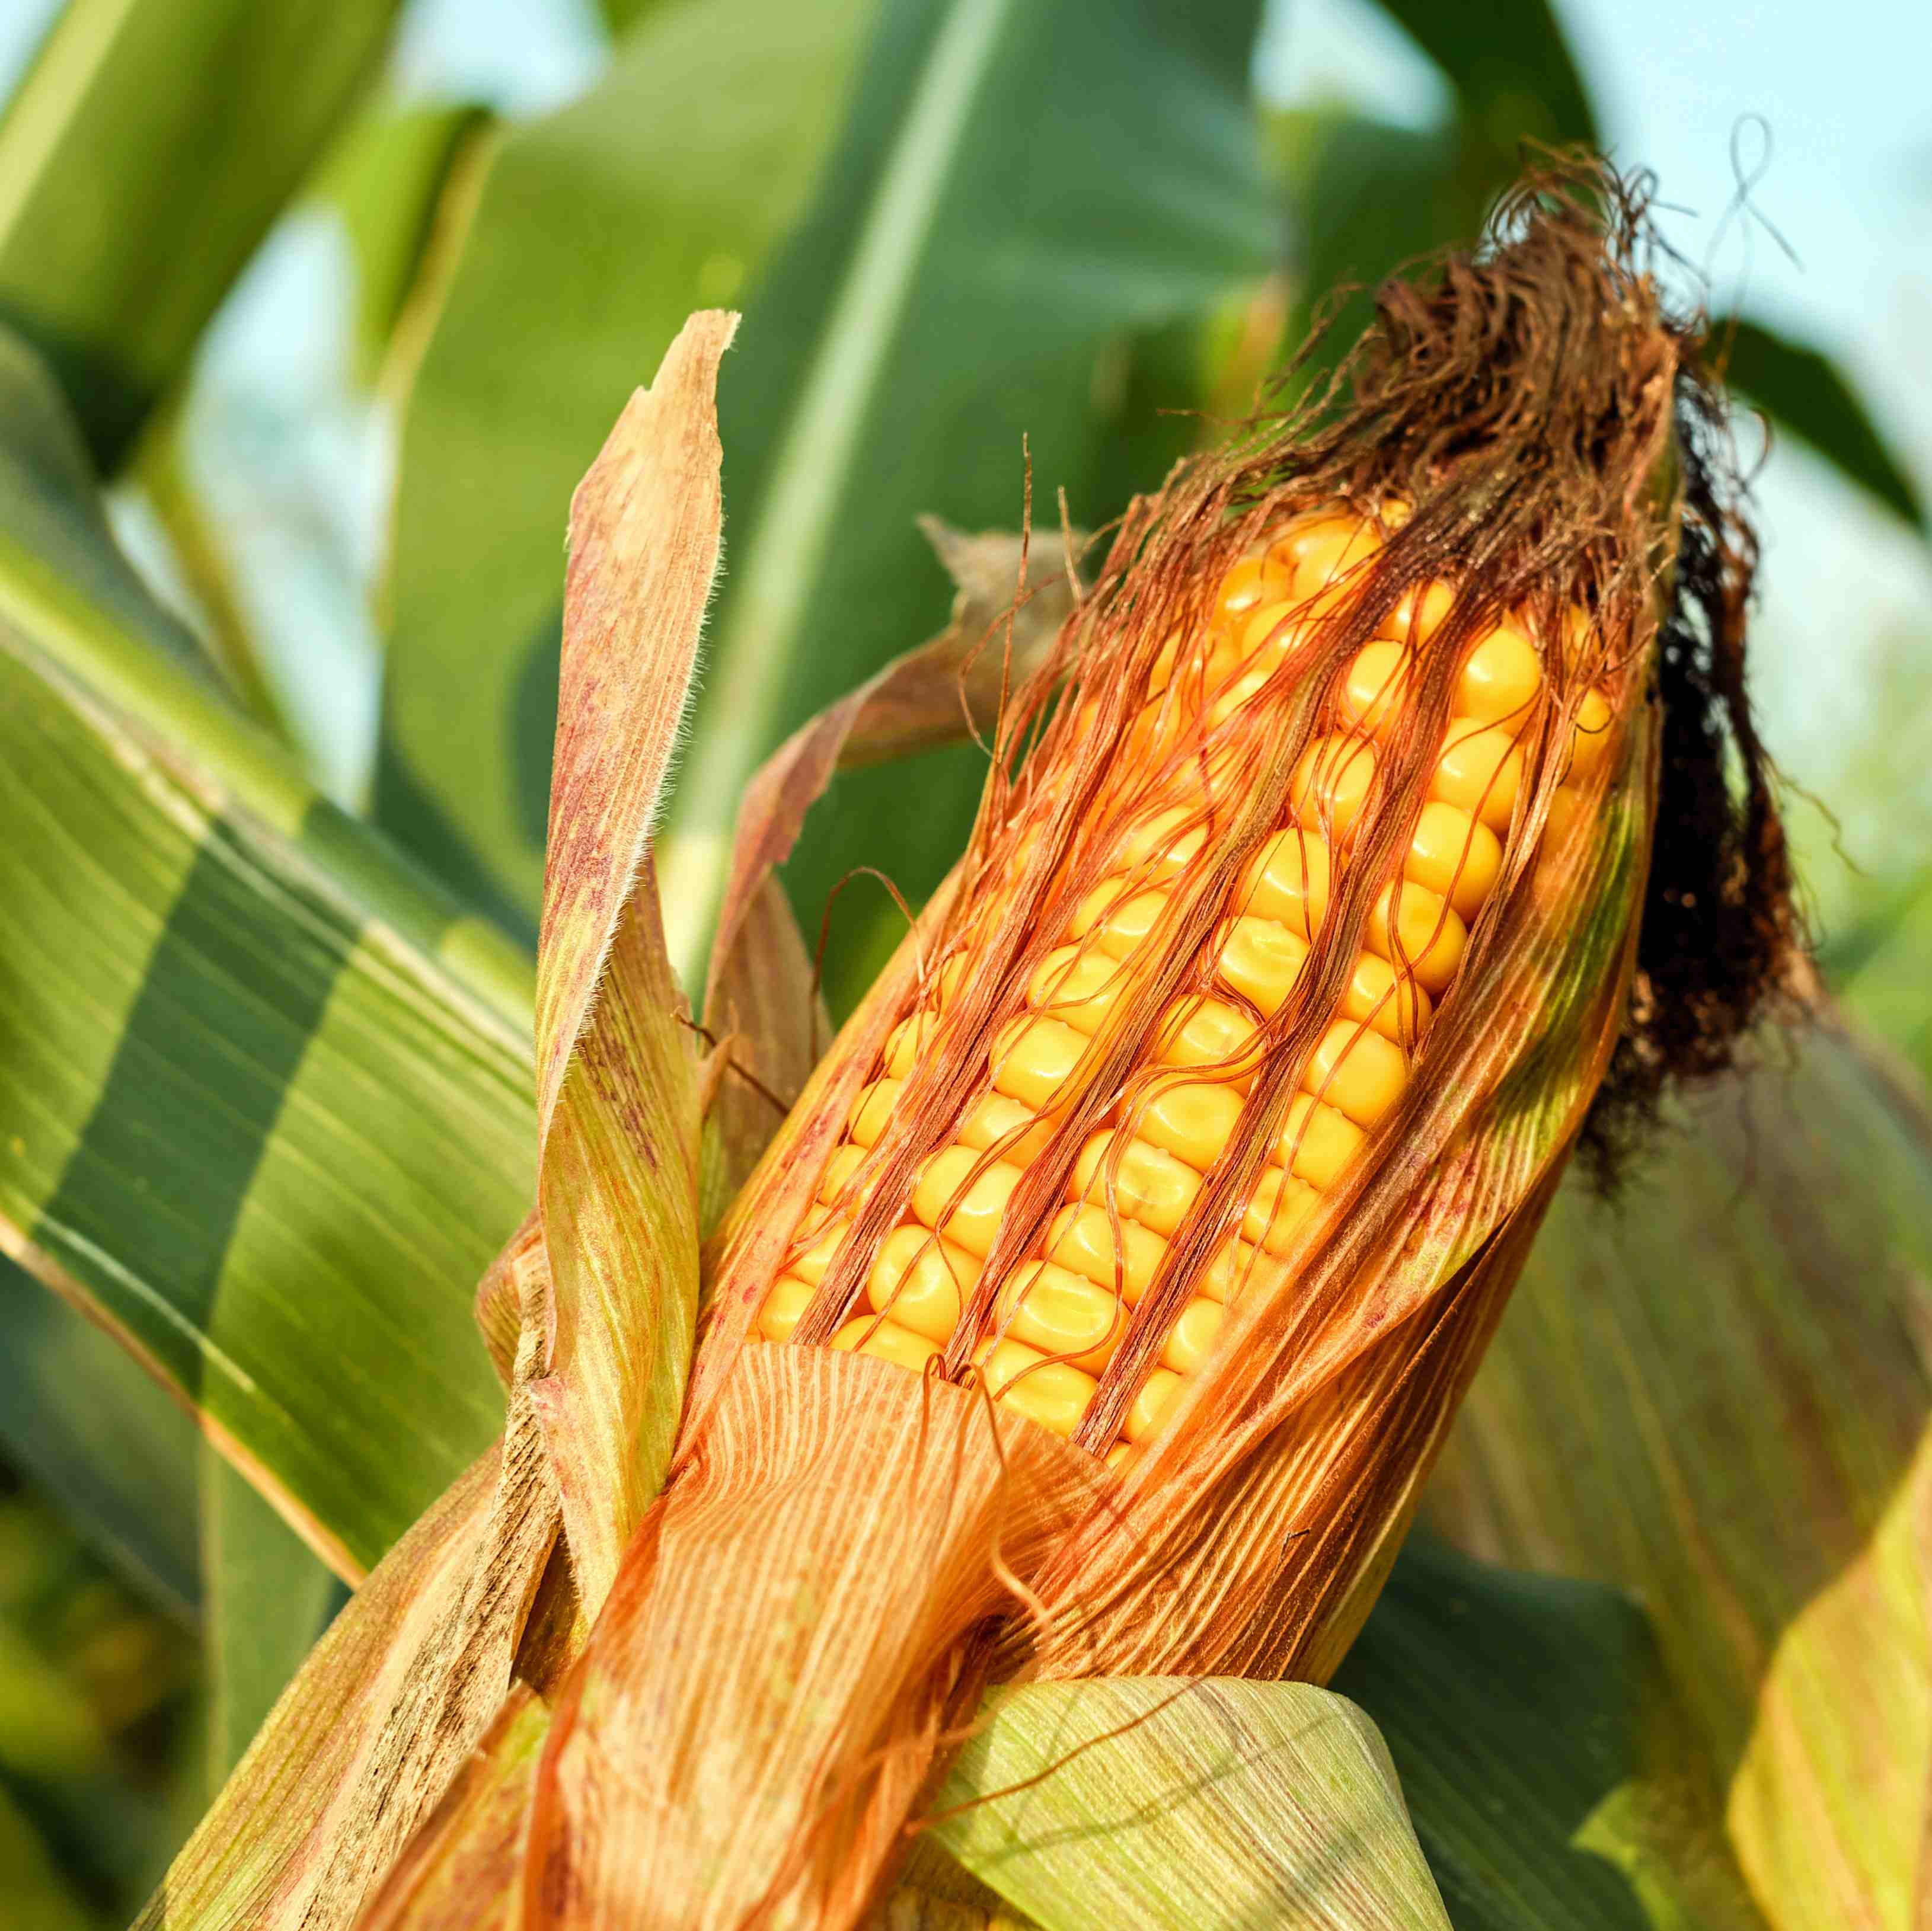 Corn note. Кукуруза в початках кормовая. Масличная кукуруза. Поле кукурузы с початками. Перуанская кукуруза.